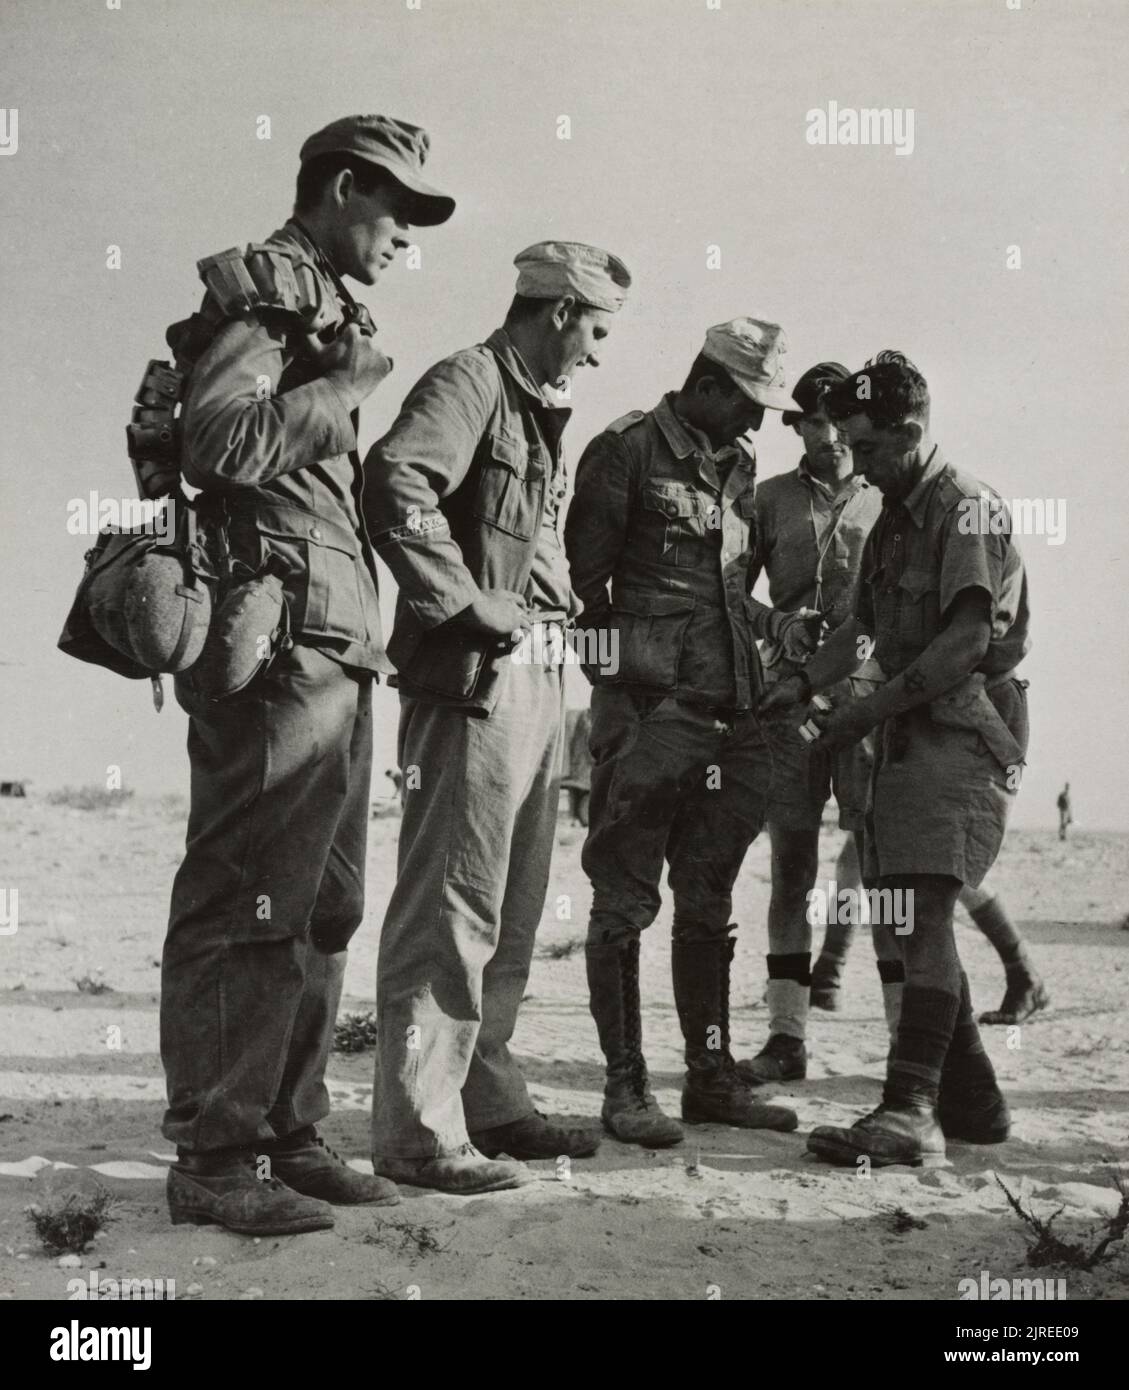 Ein Vintage-Foto um 1942, das britische Soldaten zeigt, die deutsche Kriegsgefangene der deutschen 90. Light Division Afrika korps nach ihrer Gefangennahme in El Alamein Ägypten durchsucht haben Stockfoto